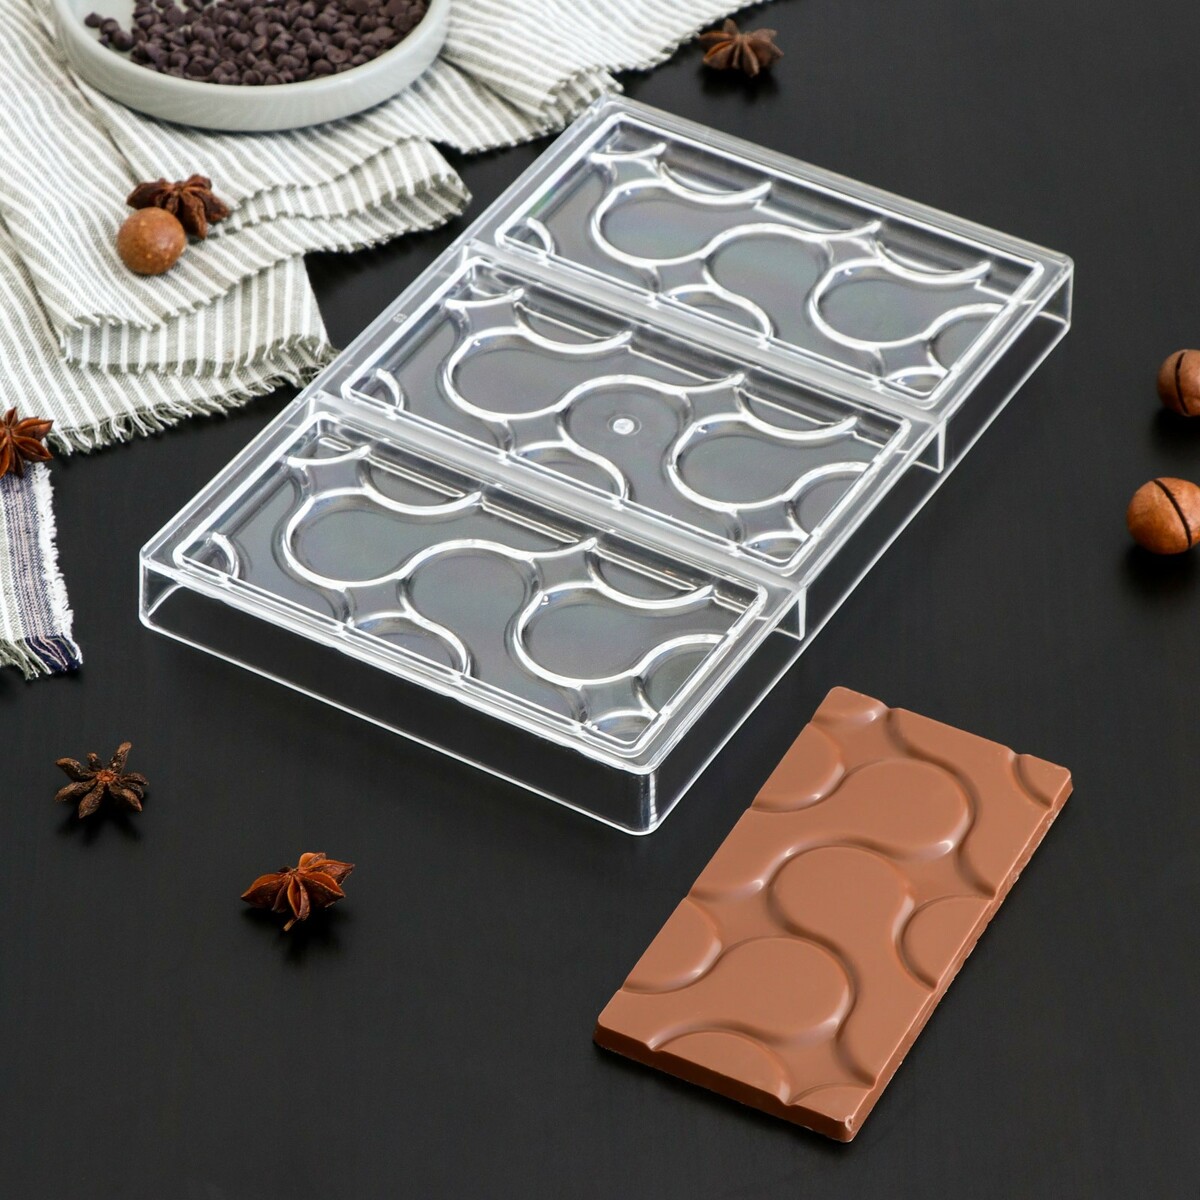 Форма для шоколада и конфет